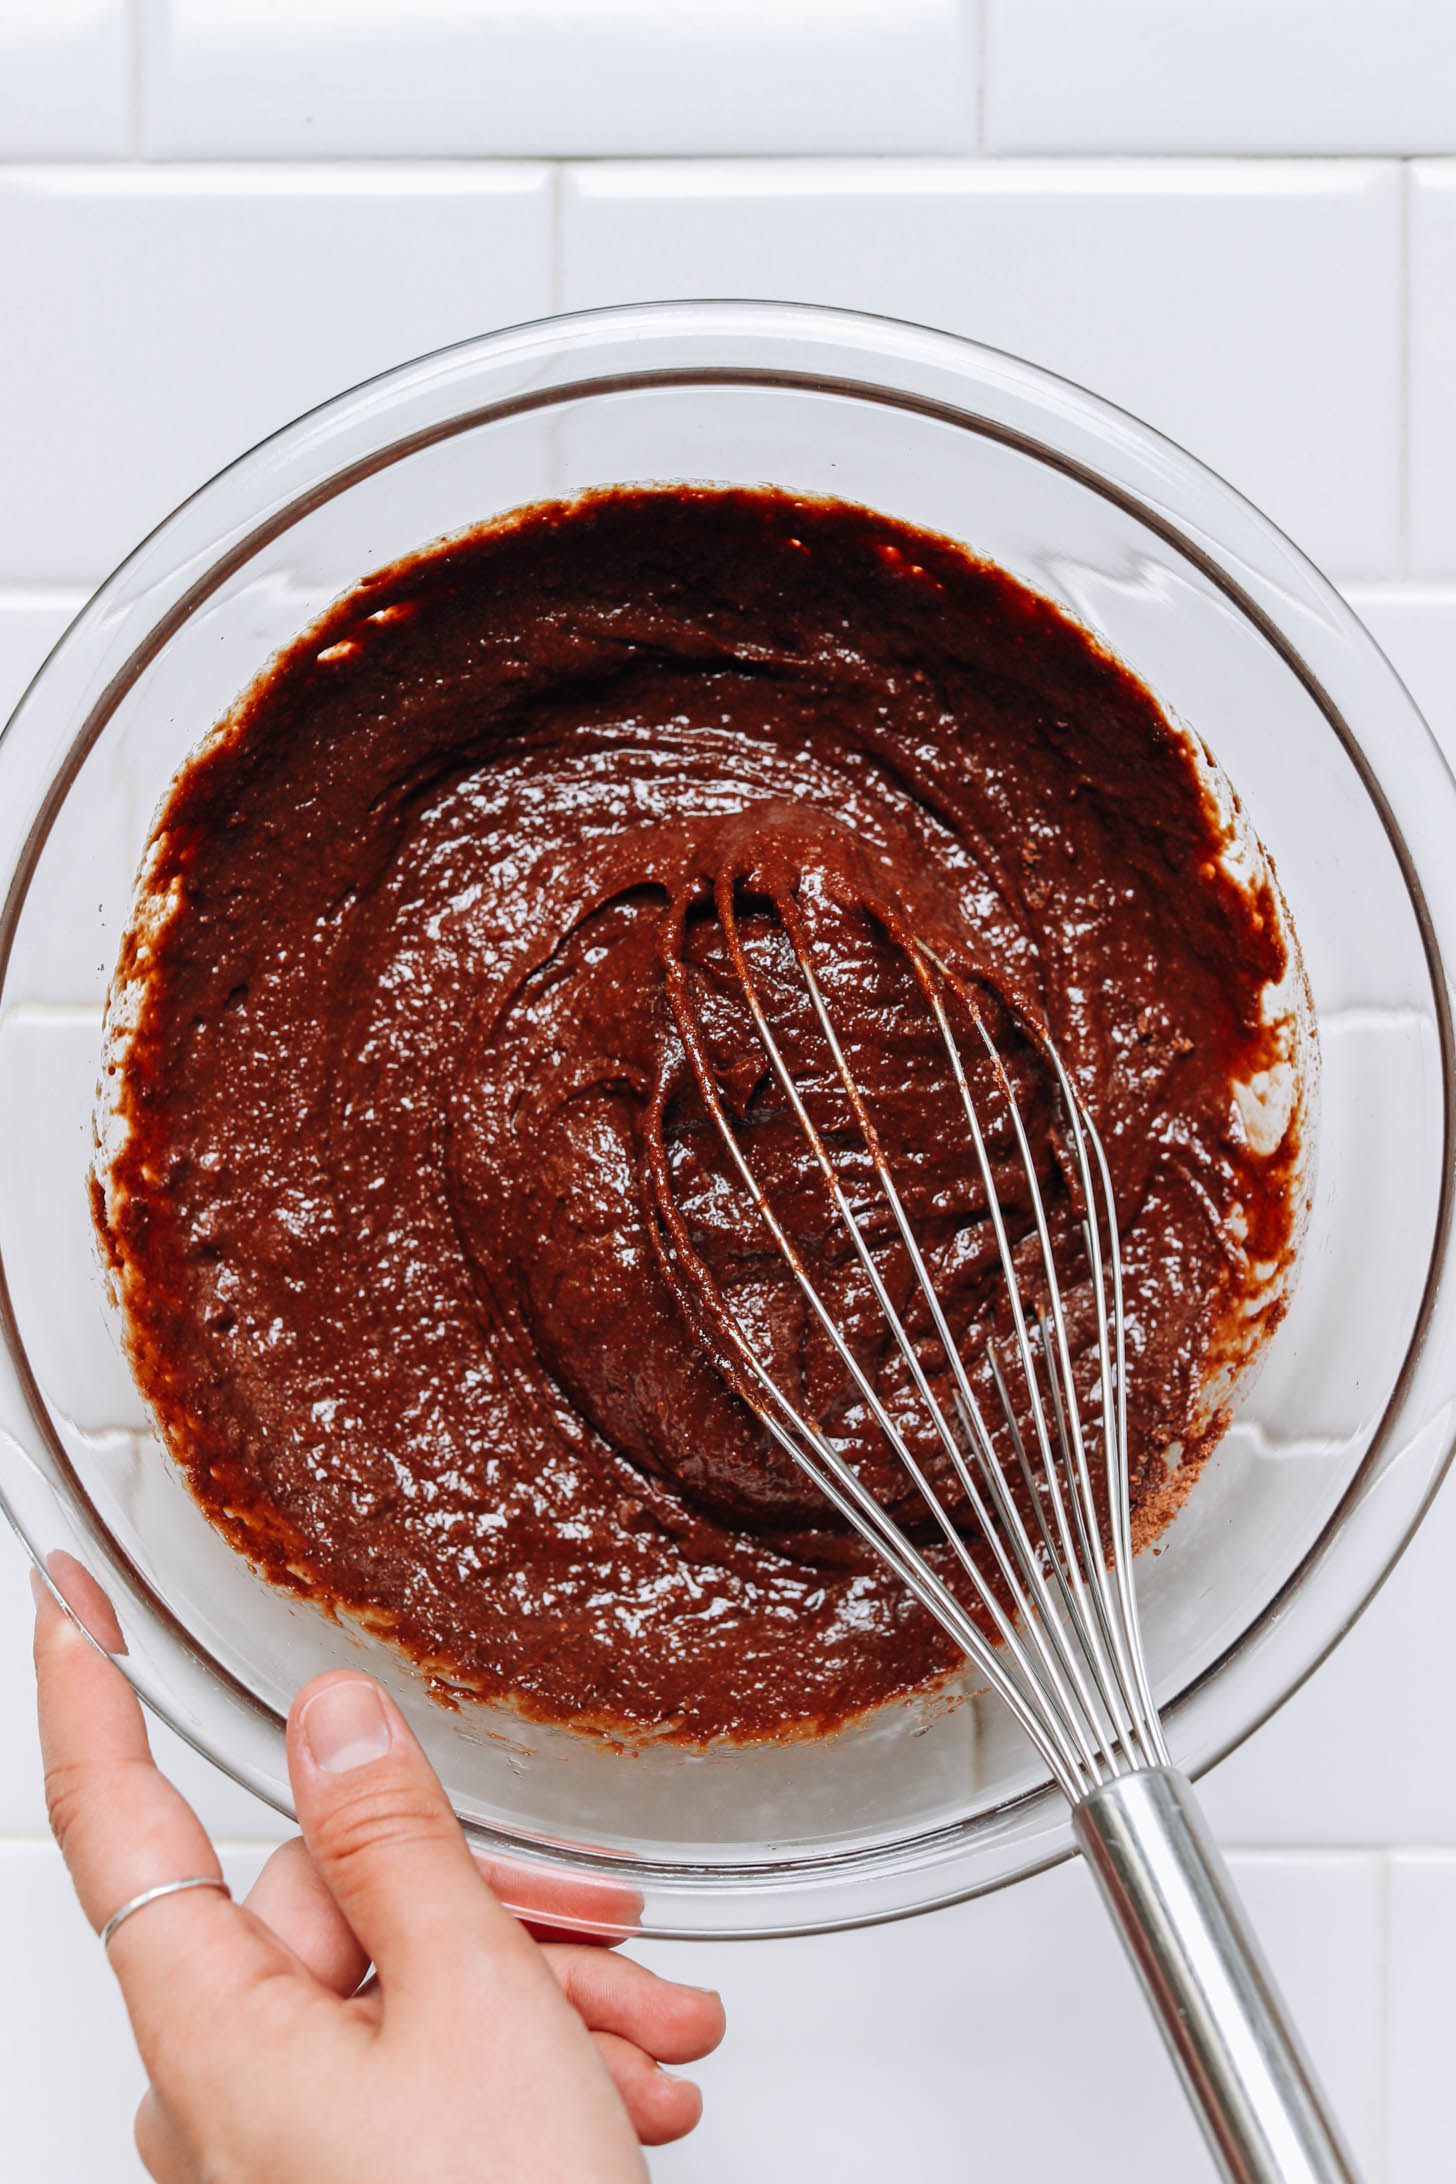 Gluten-free chocolate cake batter